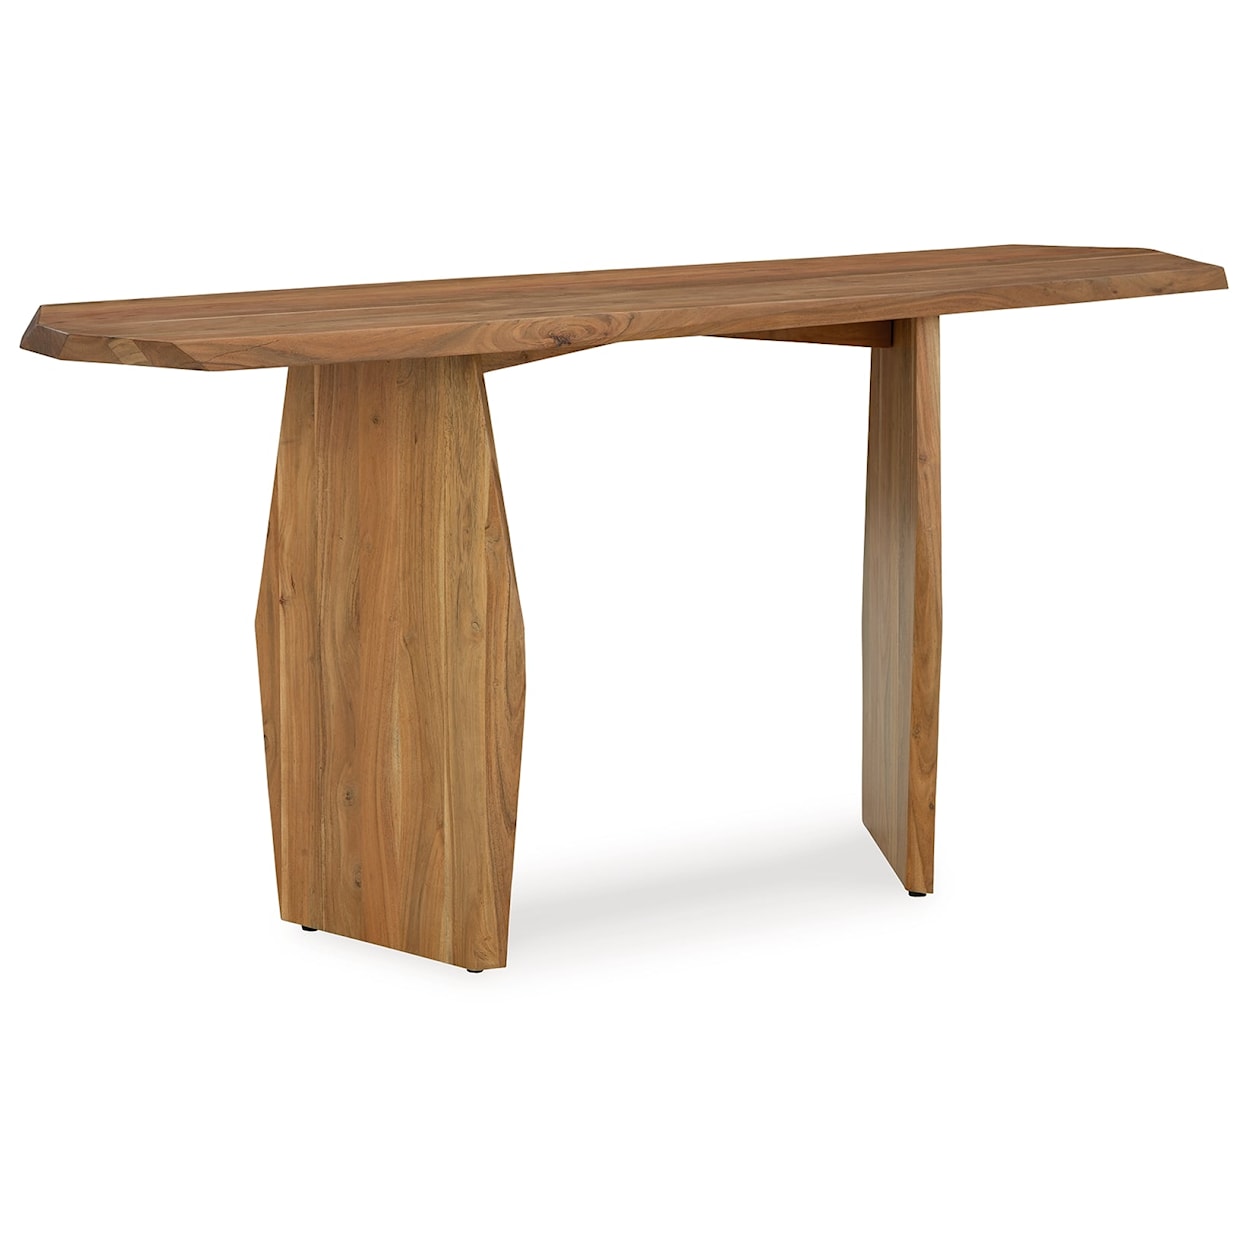 Ashley Furniture Signature Design Holward Console Sofa Table